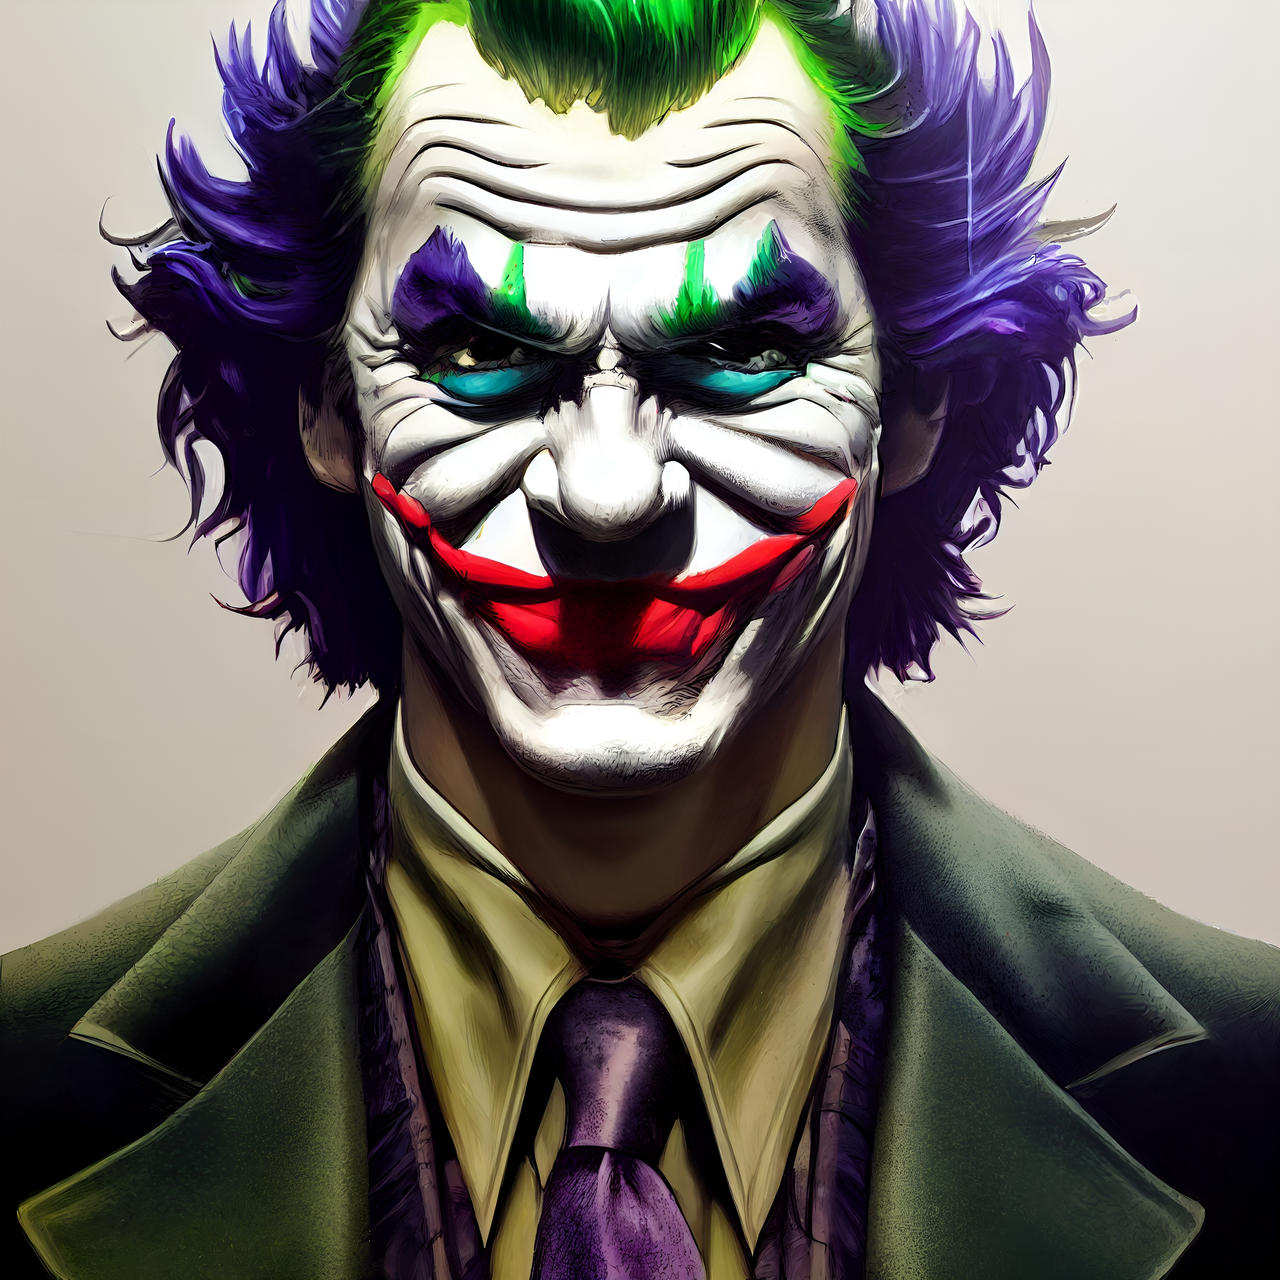 Alternate Joker by vantablackanddark on DeviantArt